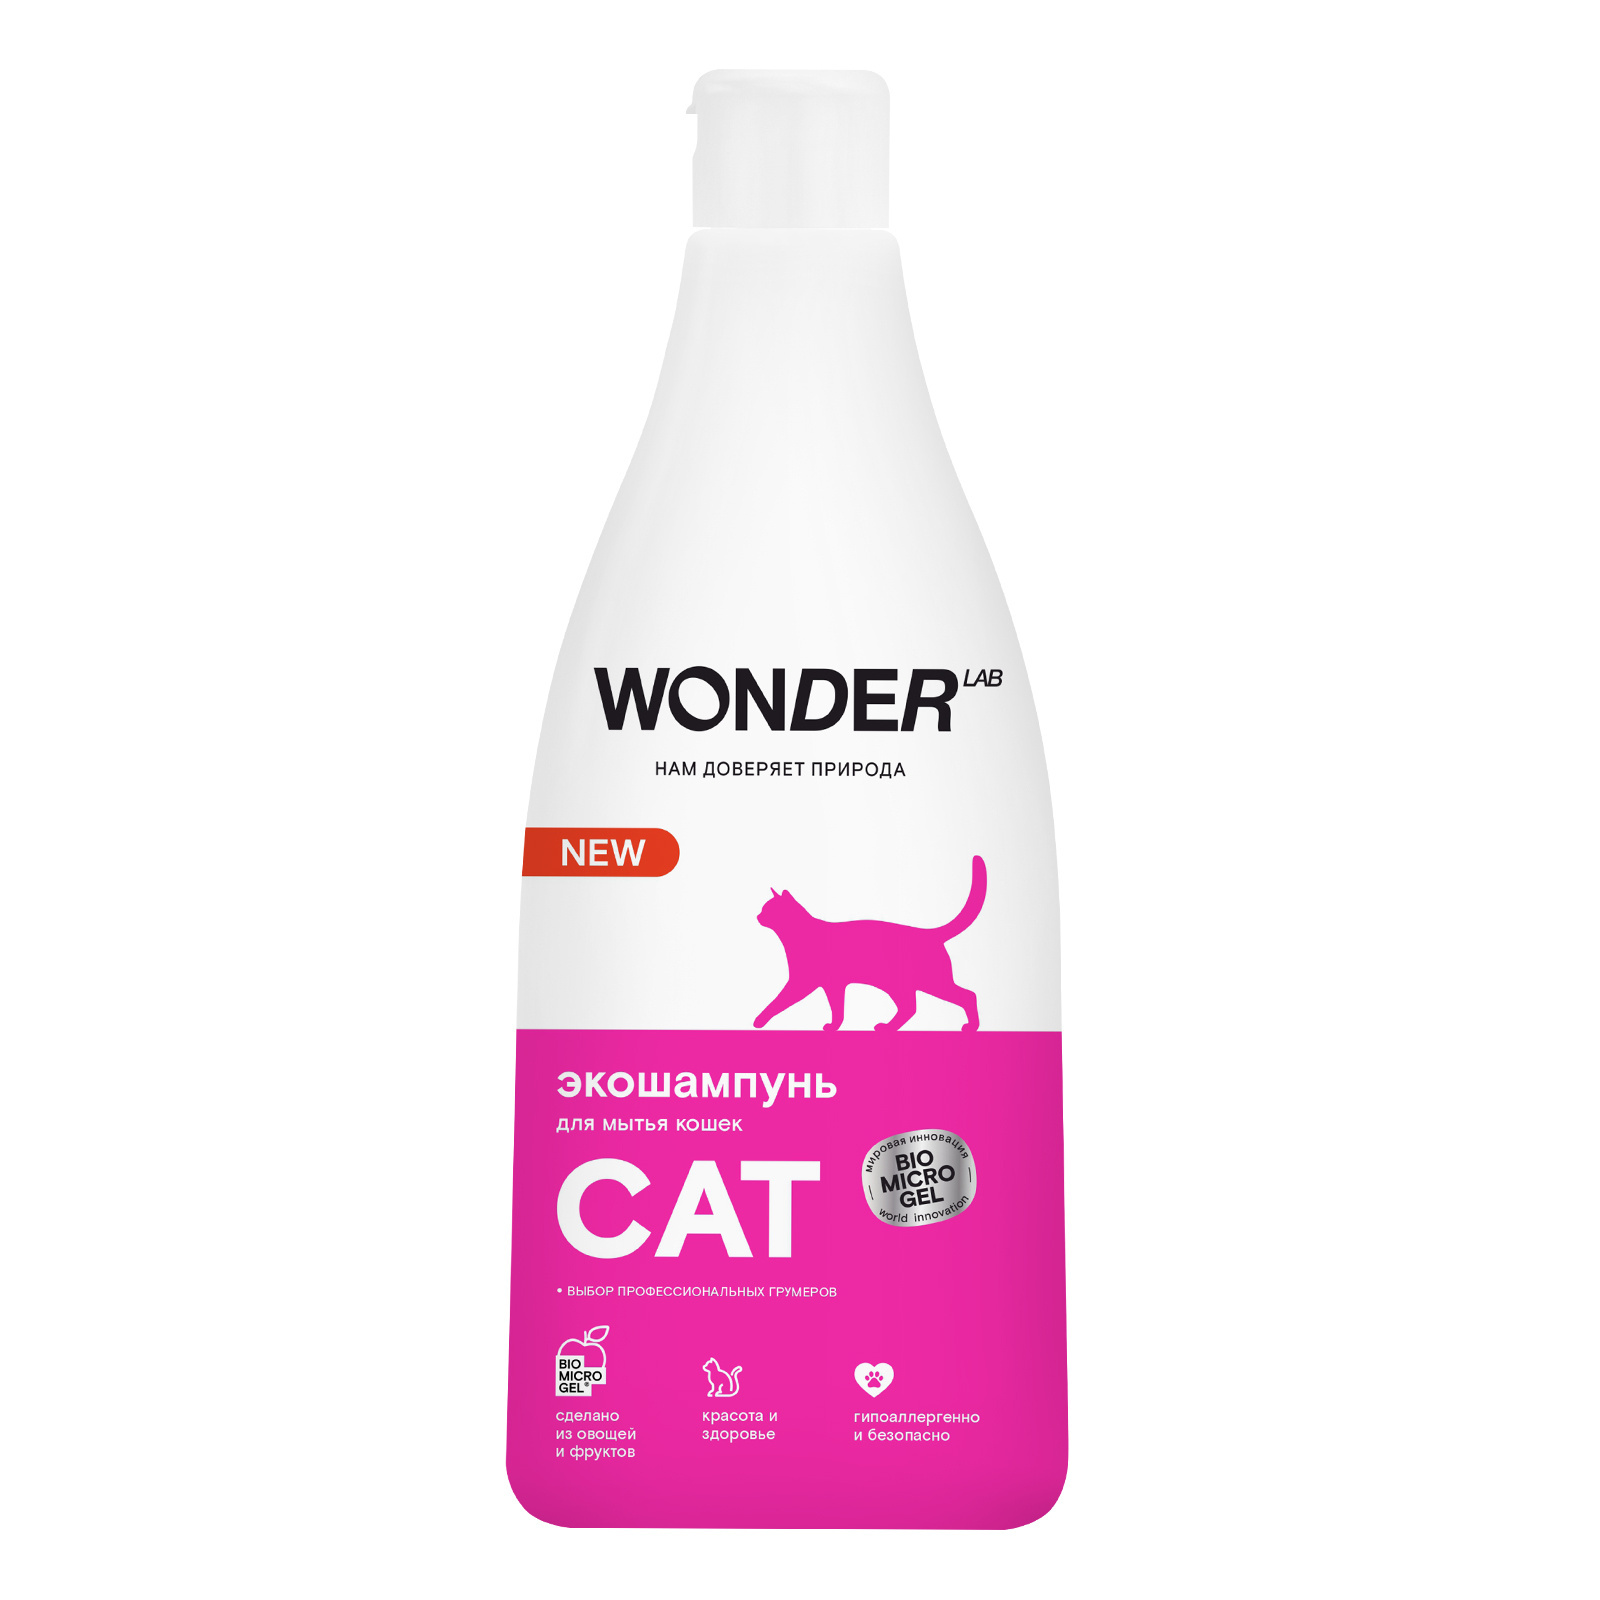 Wonder lab экошампунь для мытья кошек (550 г)